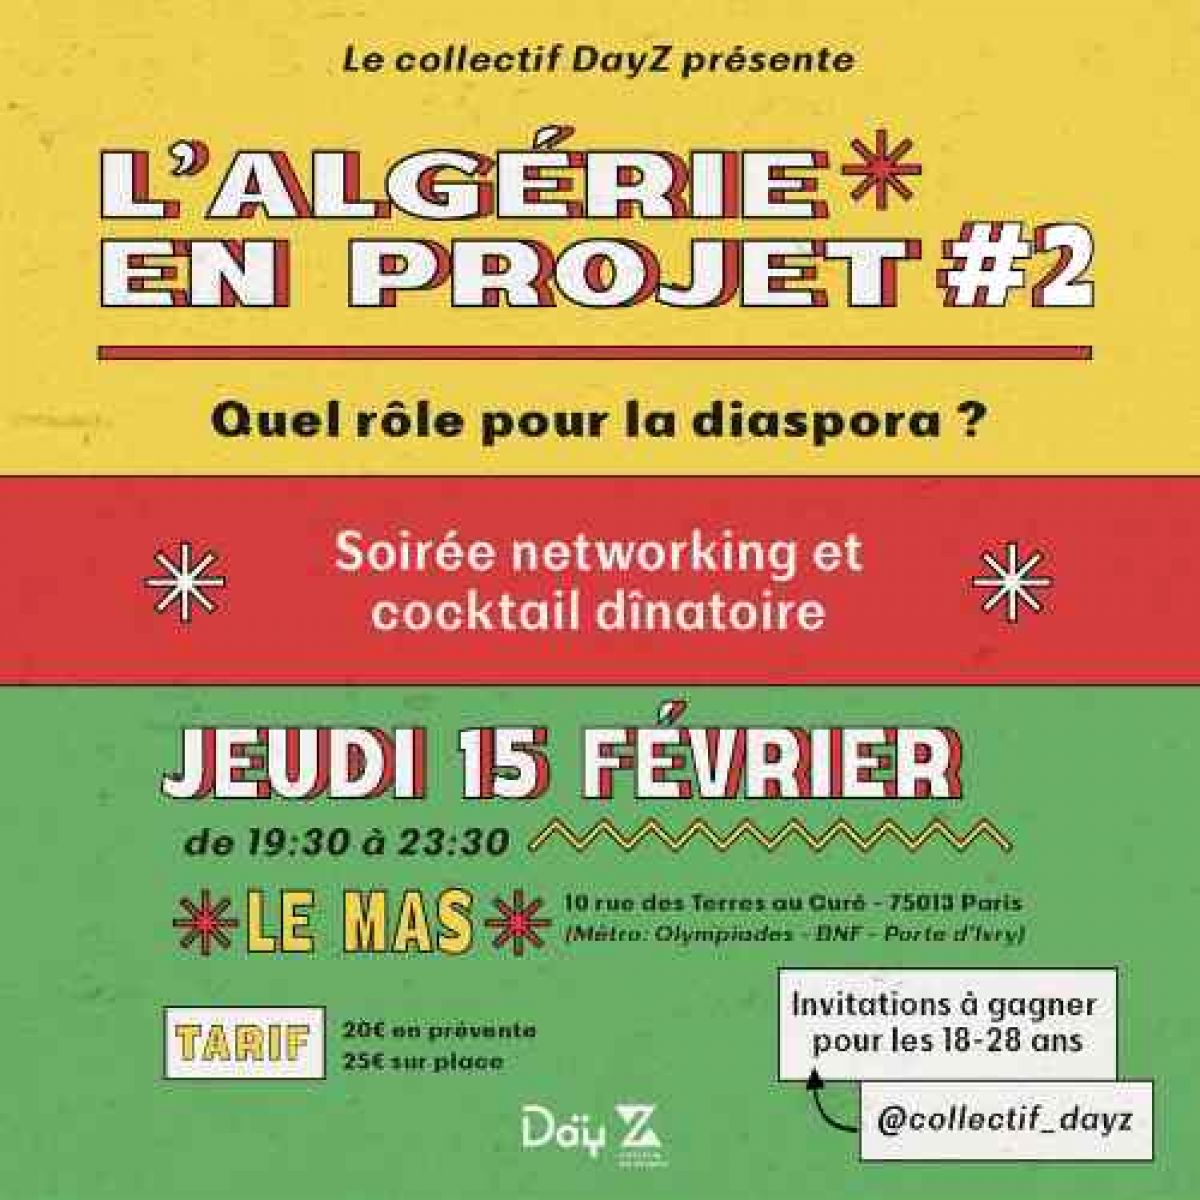 L'Algérie en projets II - Evénément Networking Day Z